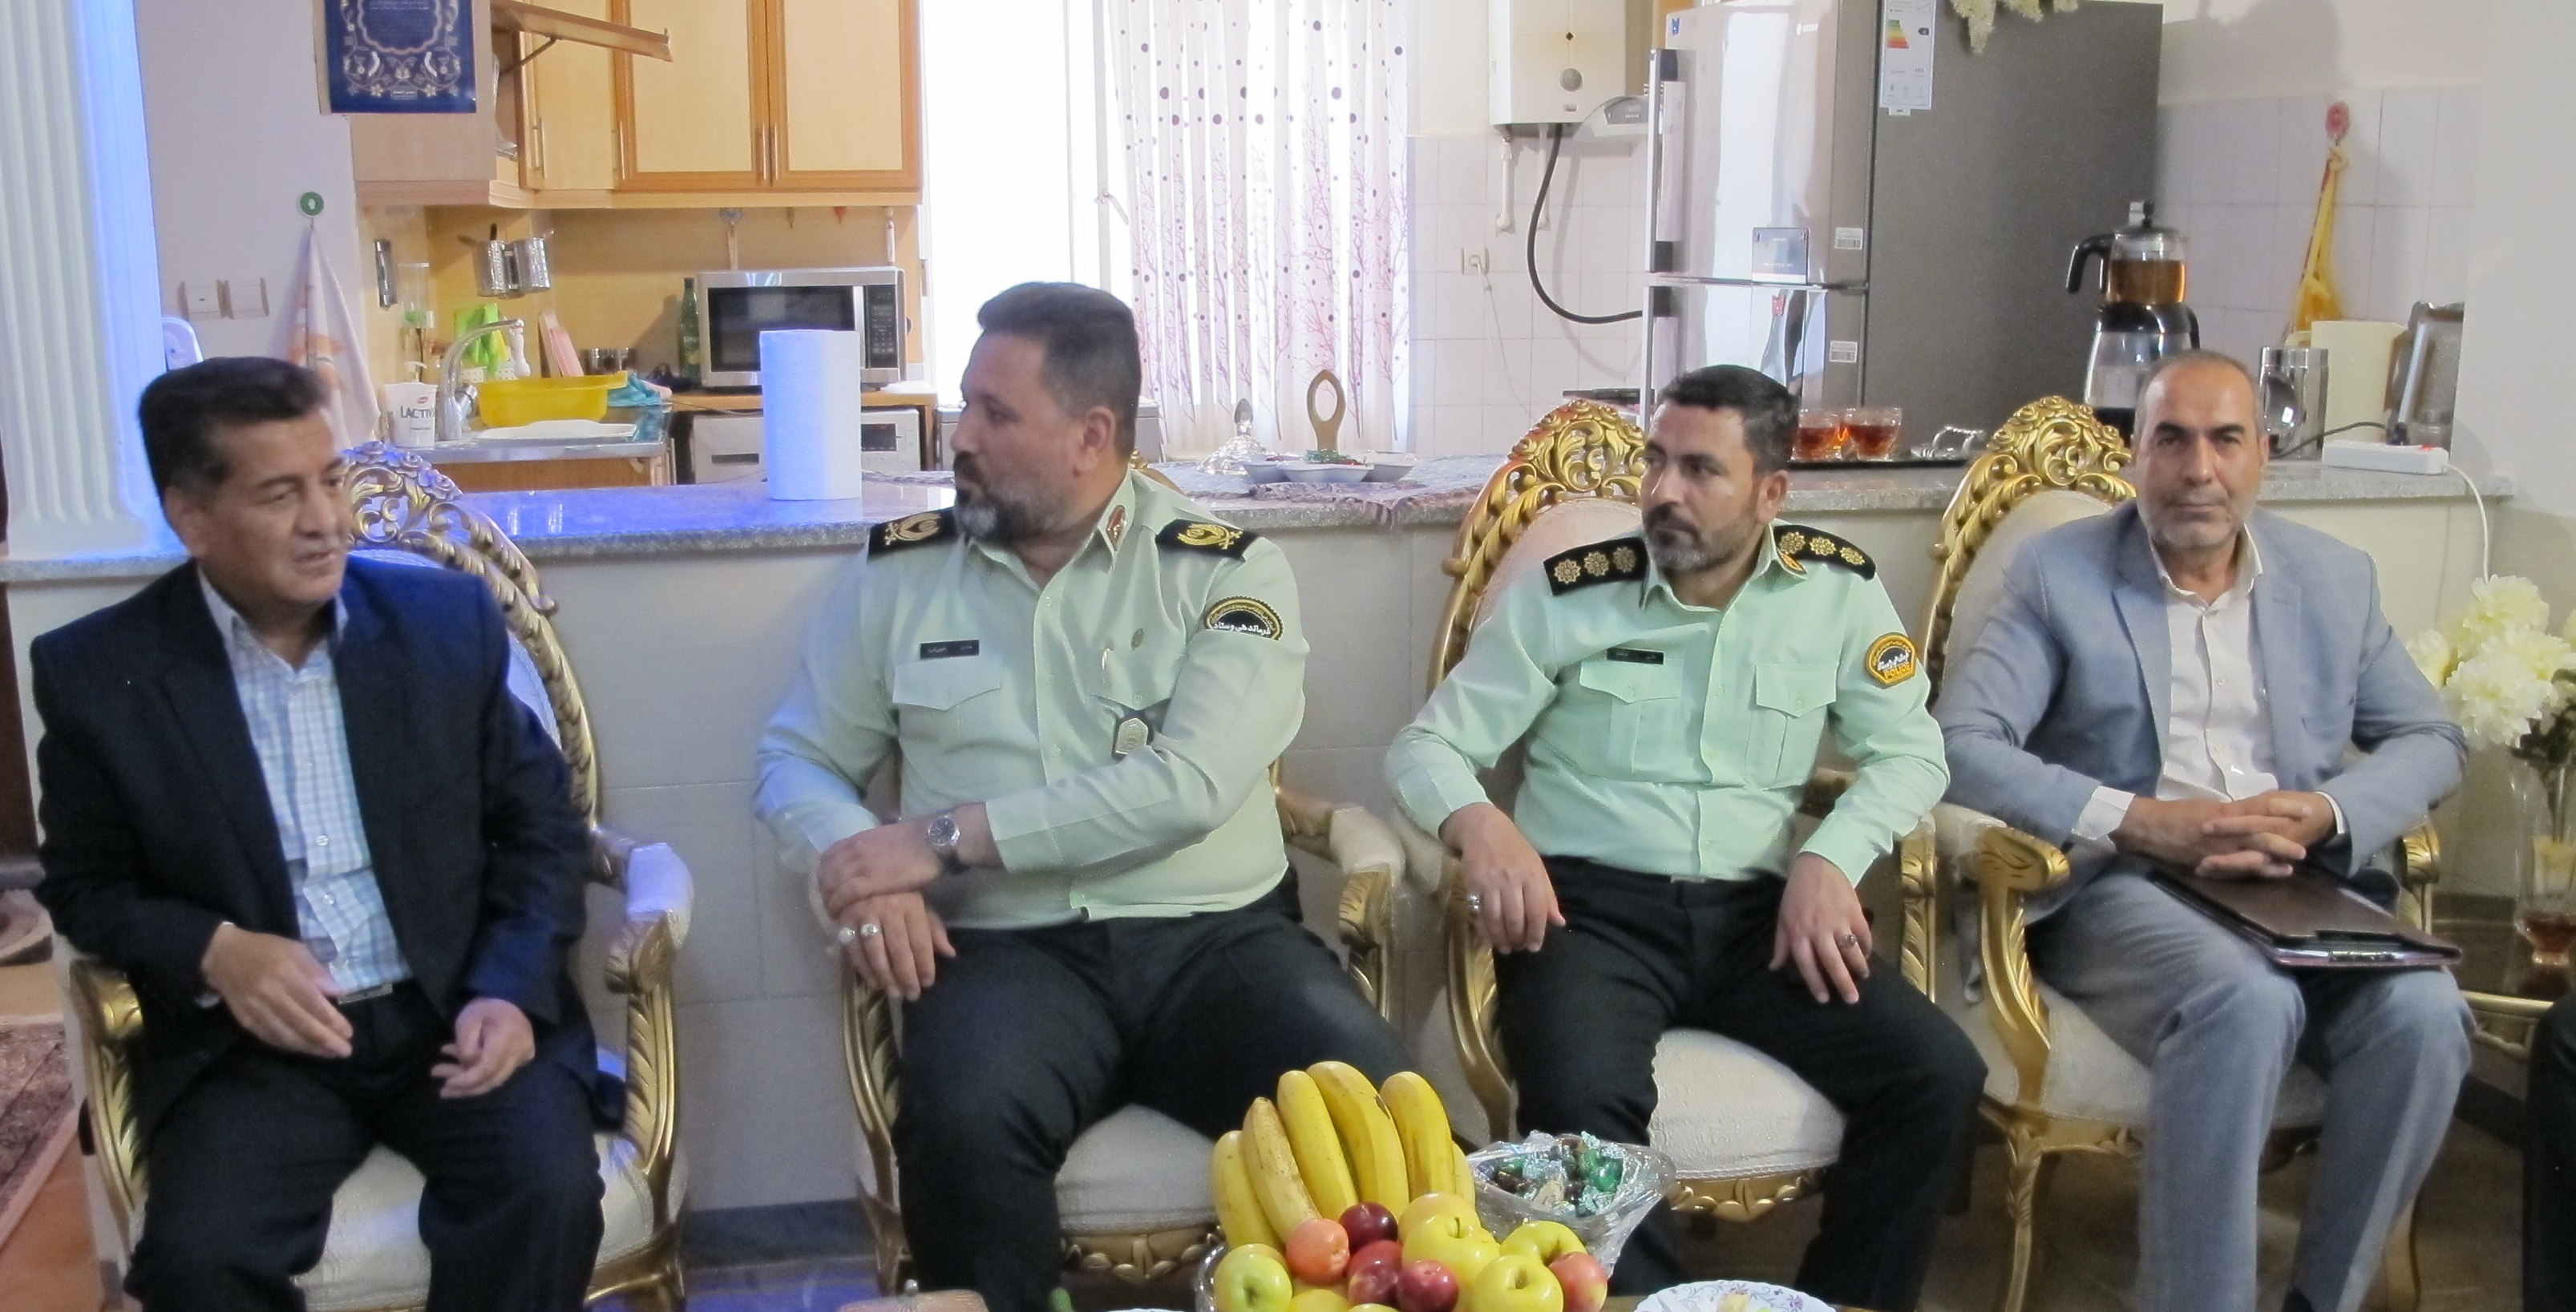 دیدار و سرکشی از 6 بازنشسته در شهرستان اراک به همراه فرماندهی انتظامی استان